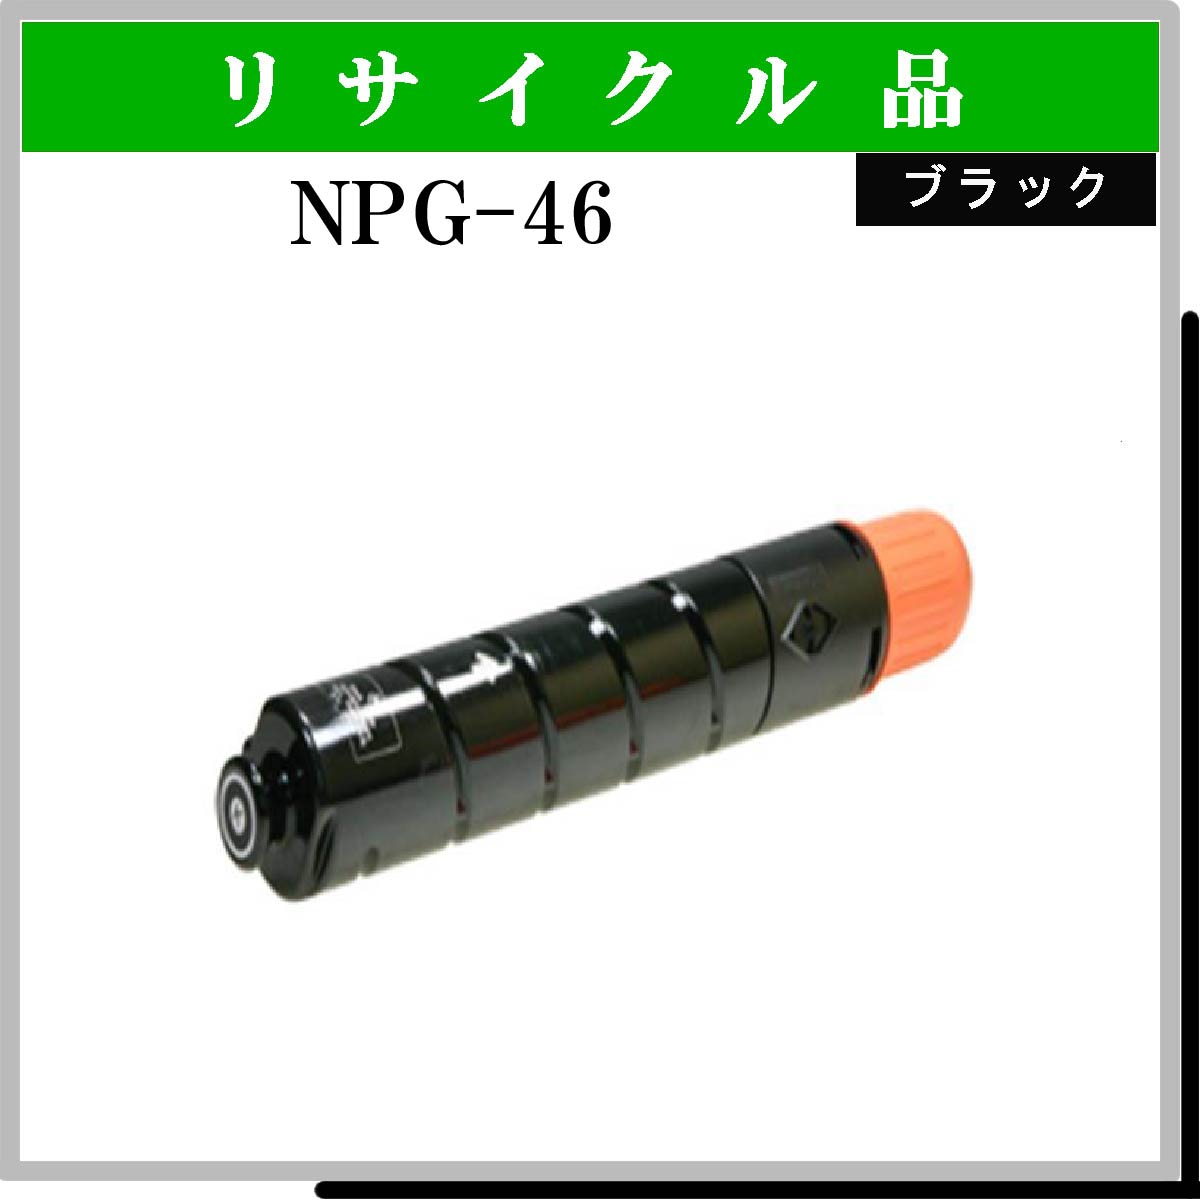 NPG-46 ﾌﾞﾗｯｸ - ウインドウを閉じる